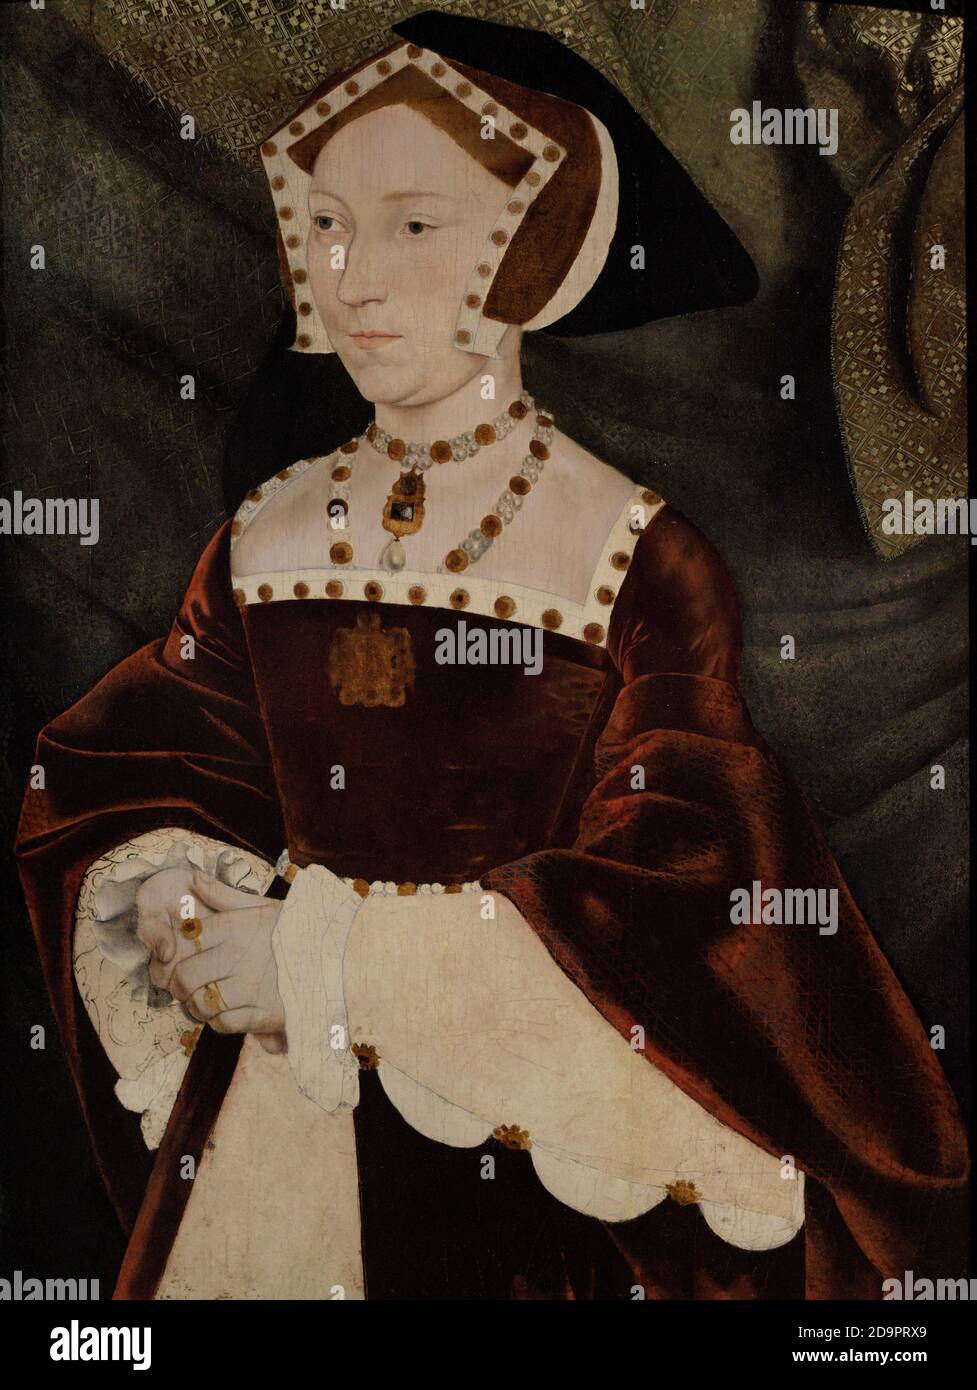 Jane Seymour (1509-1537). Königin von England (1536-1537) als dritte Frau Heinrich VIII. Hochformat. Werkstatt von Hans Holbein dem Jüngeren. Öl auf Platte (64 x 48 cm), c. 1540. National Portrait Gallery. London, England, Vereinigtes Königreich. Stockfoto